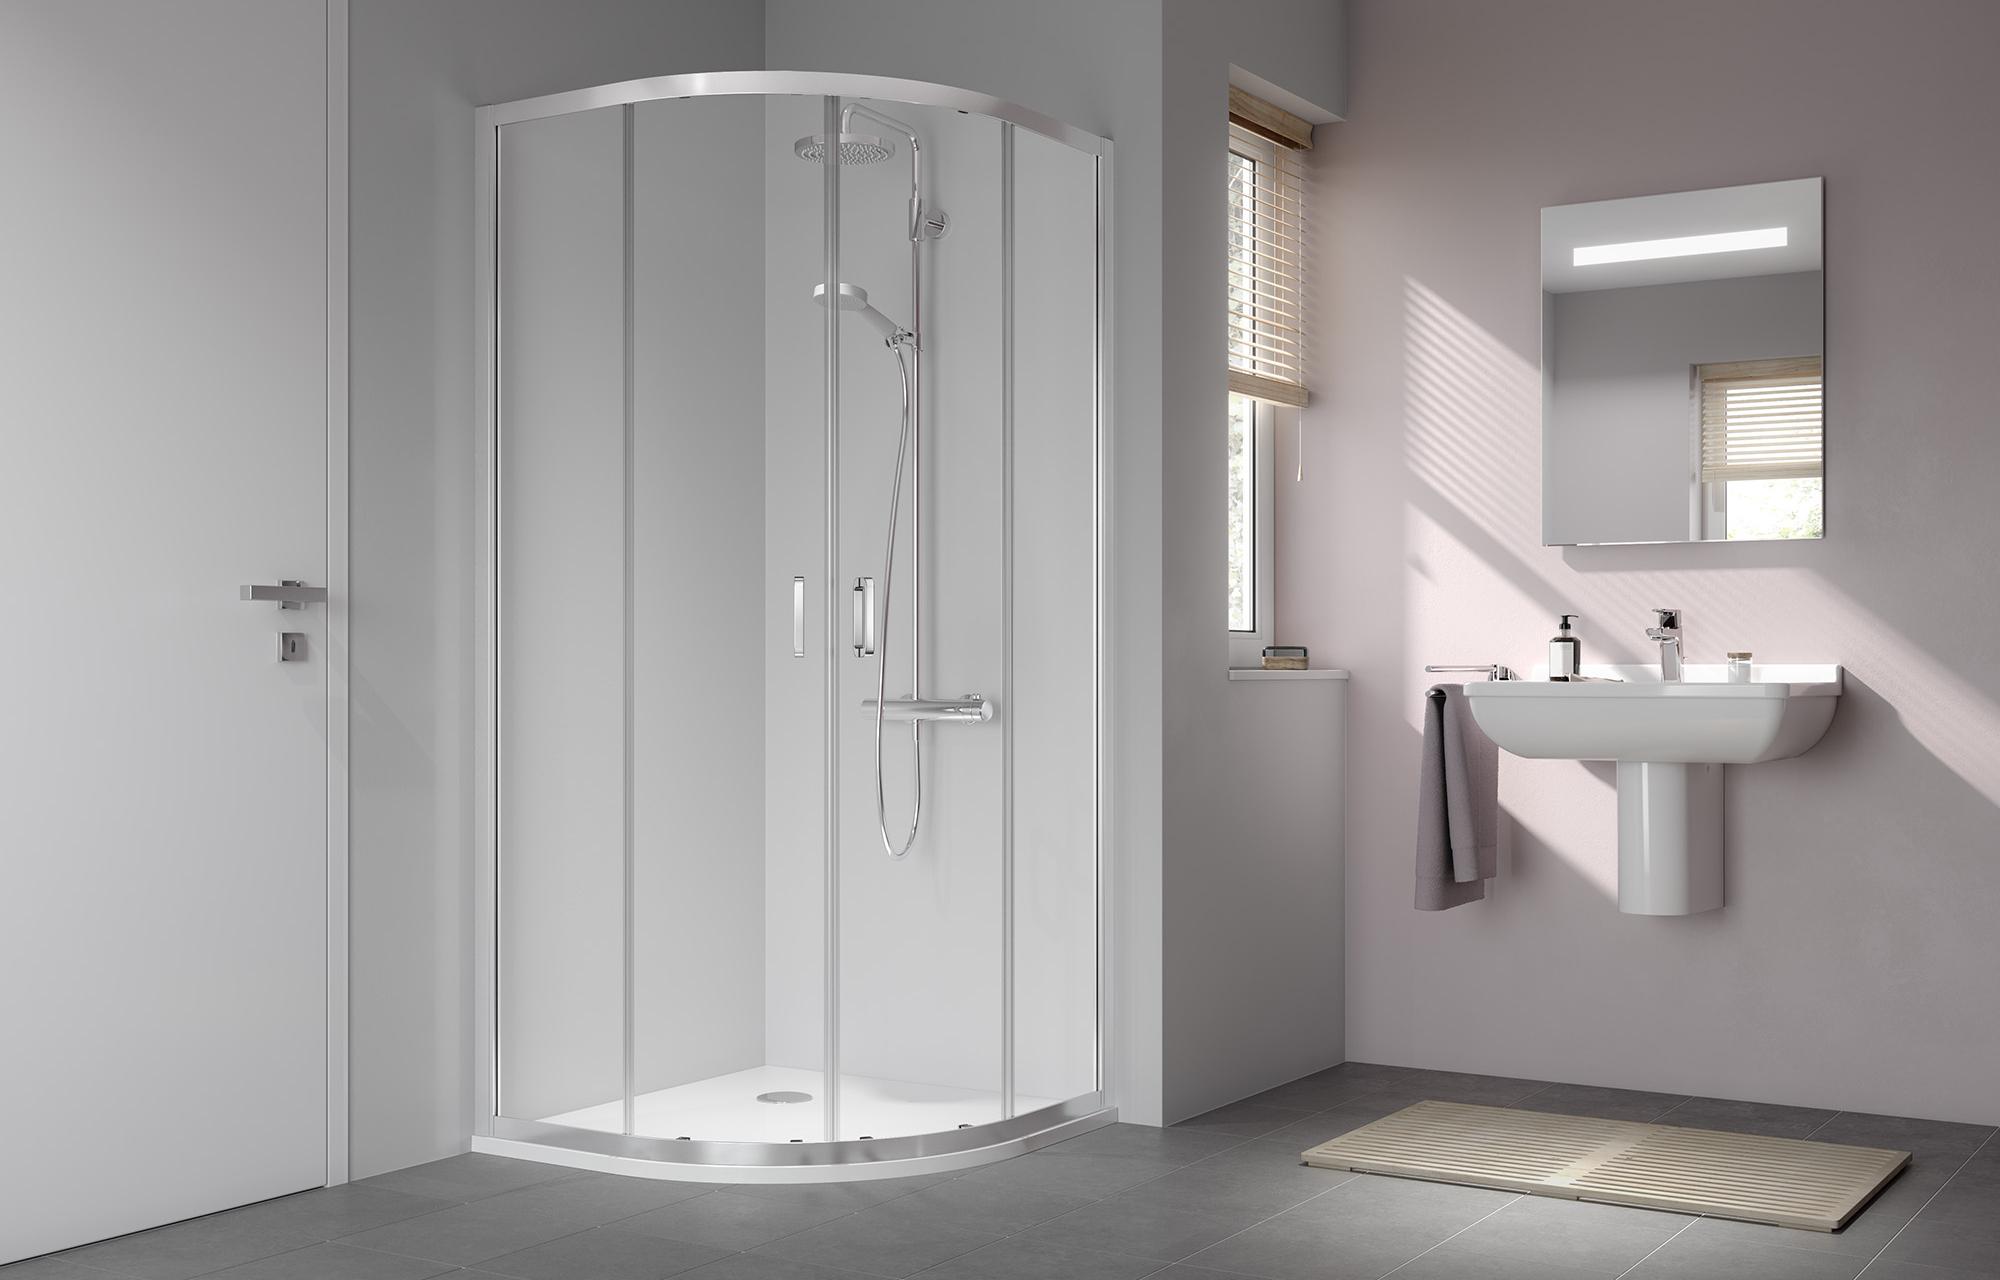 Profilowa kabina prysznicowa Kermi STINA, kabina ćwierćkolista (drzwi przesuwne)